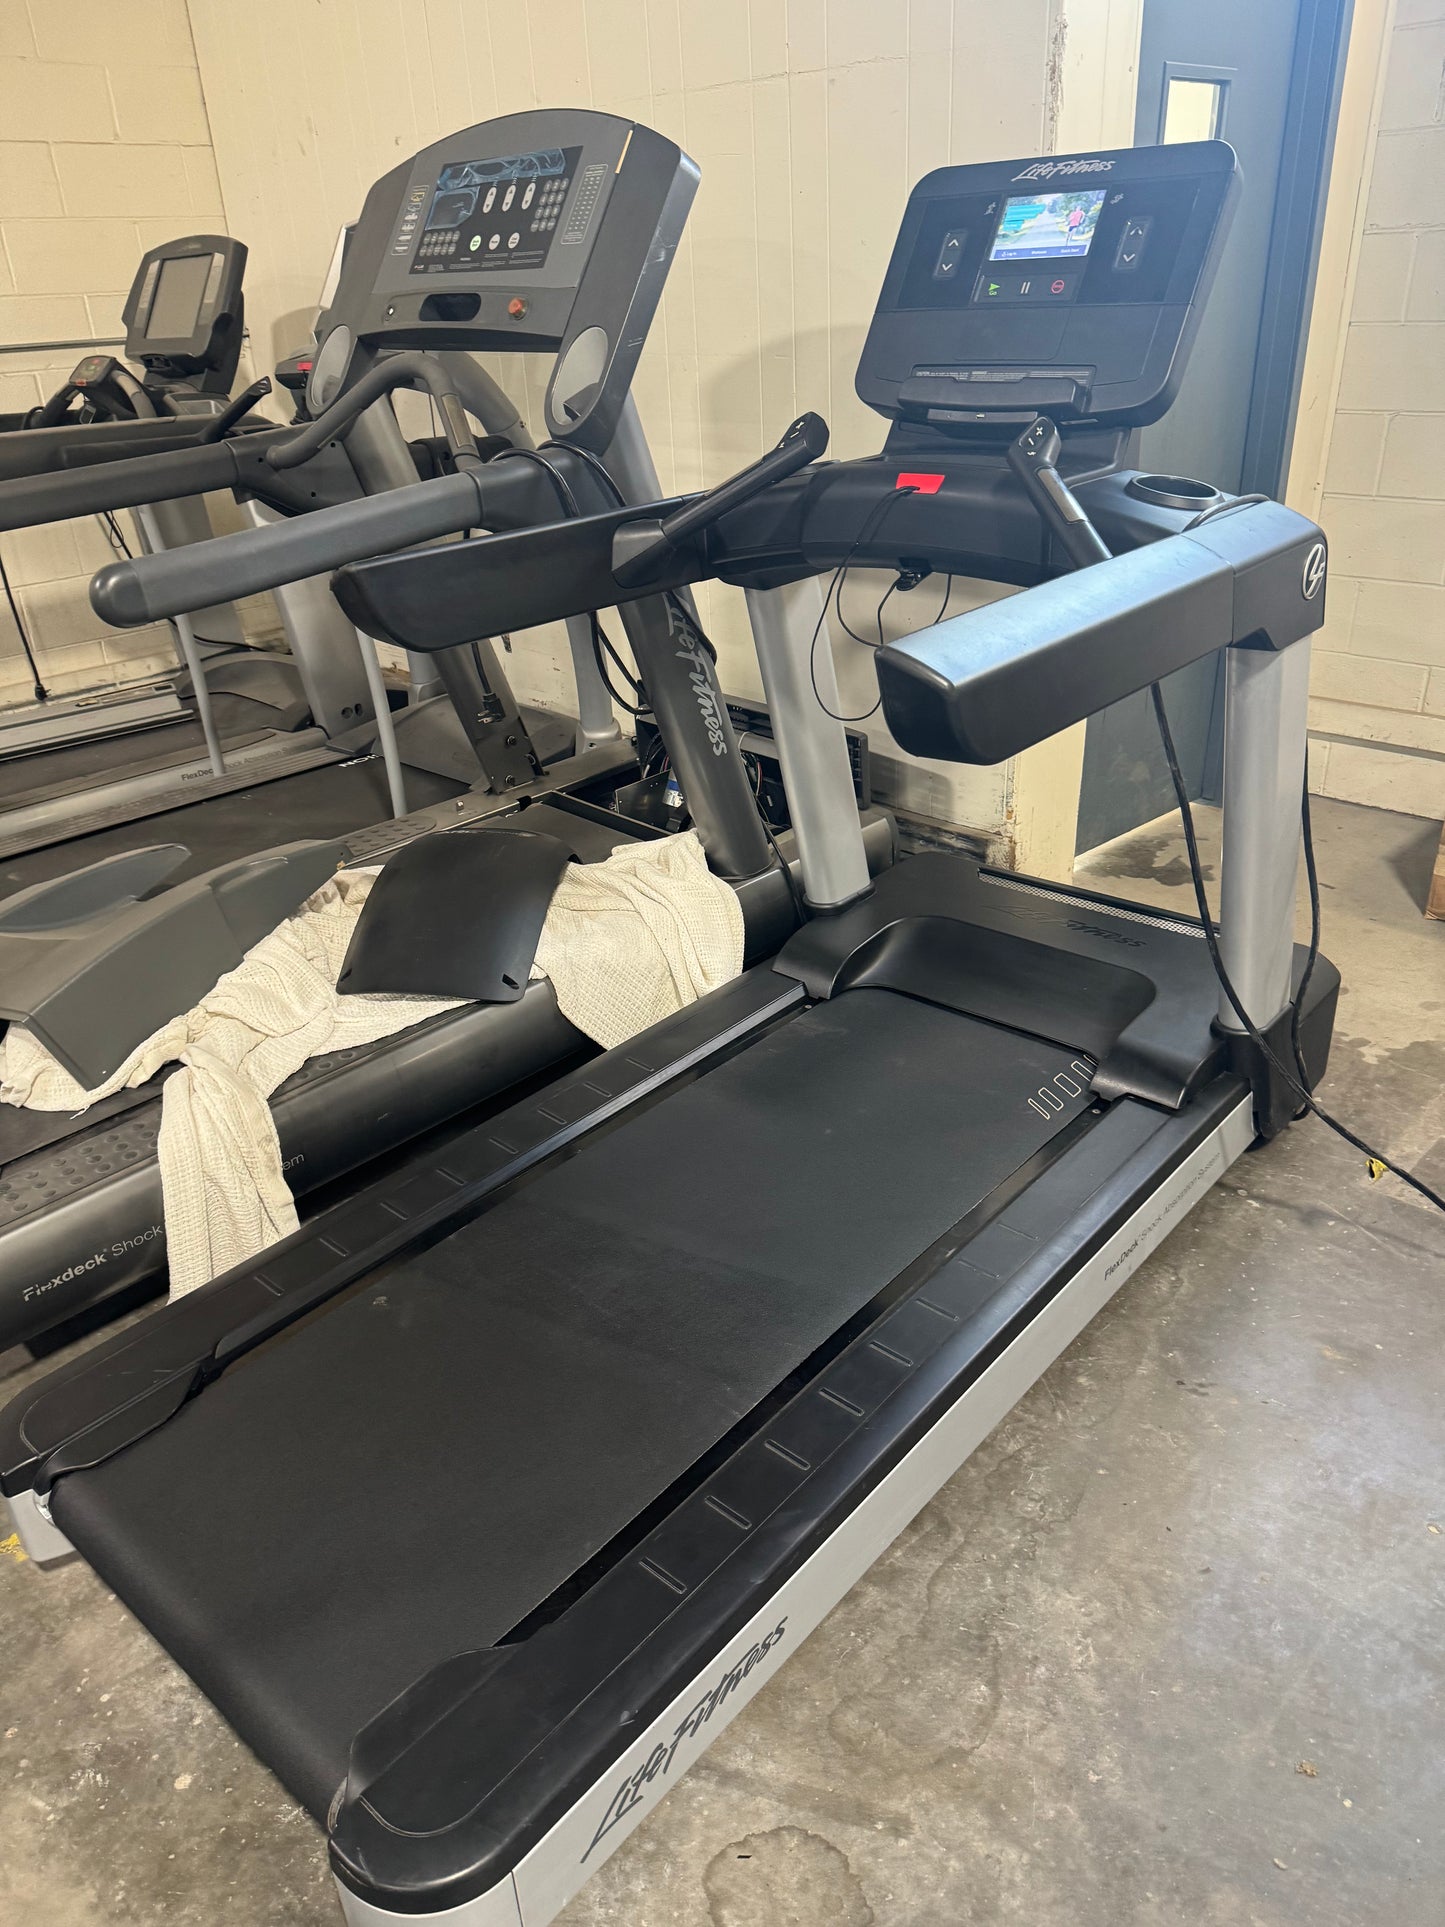 Life Fitness Integrity Treadmill